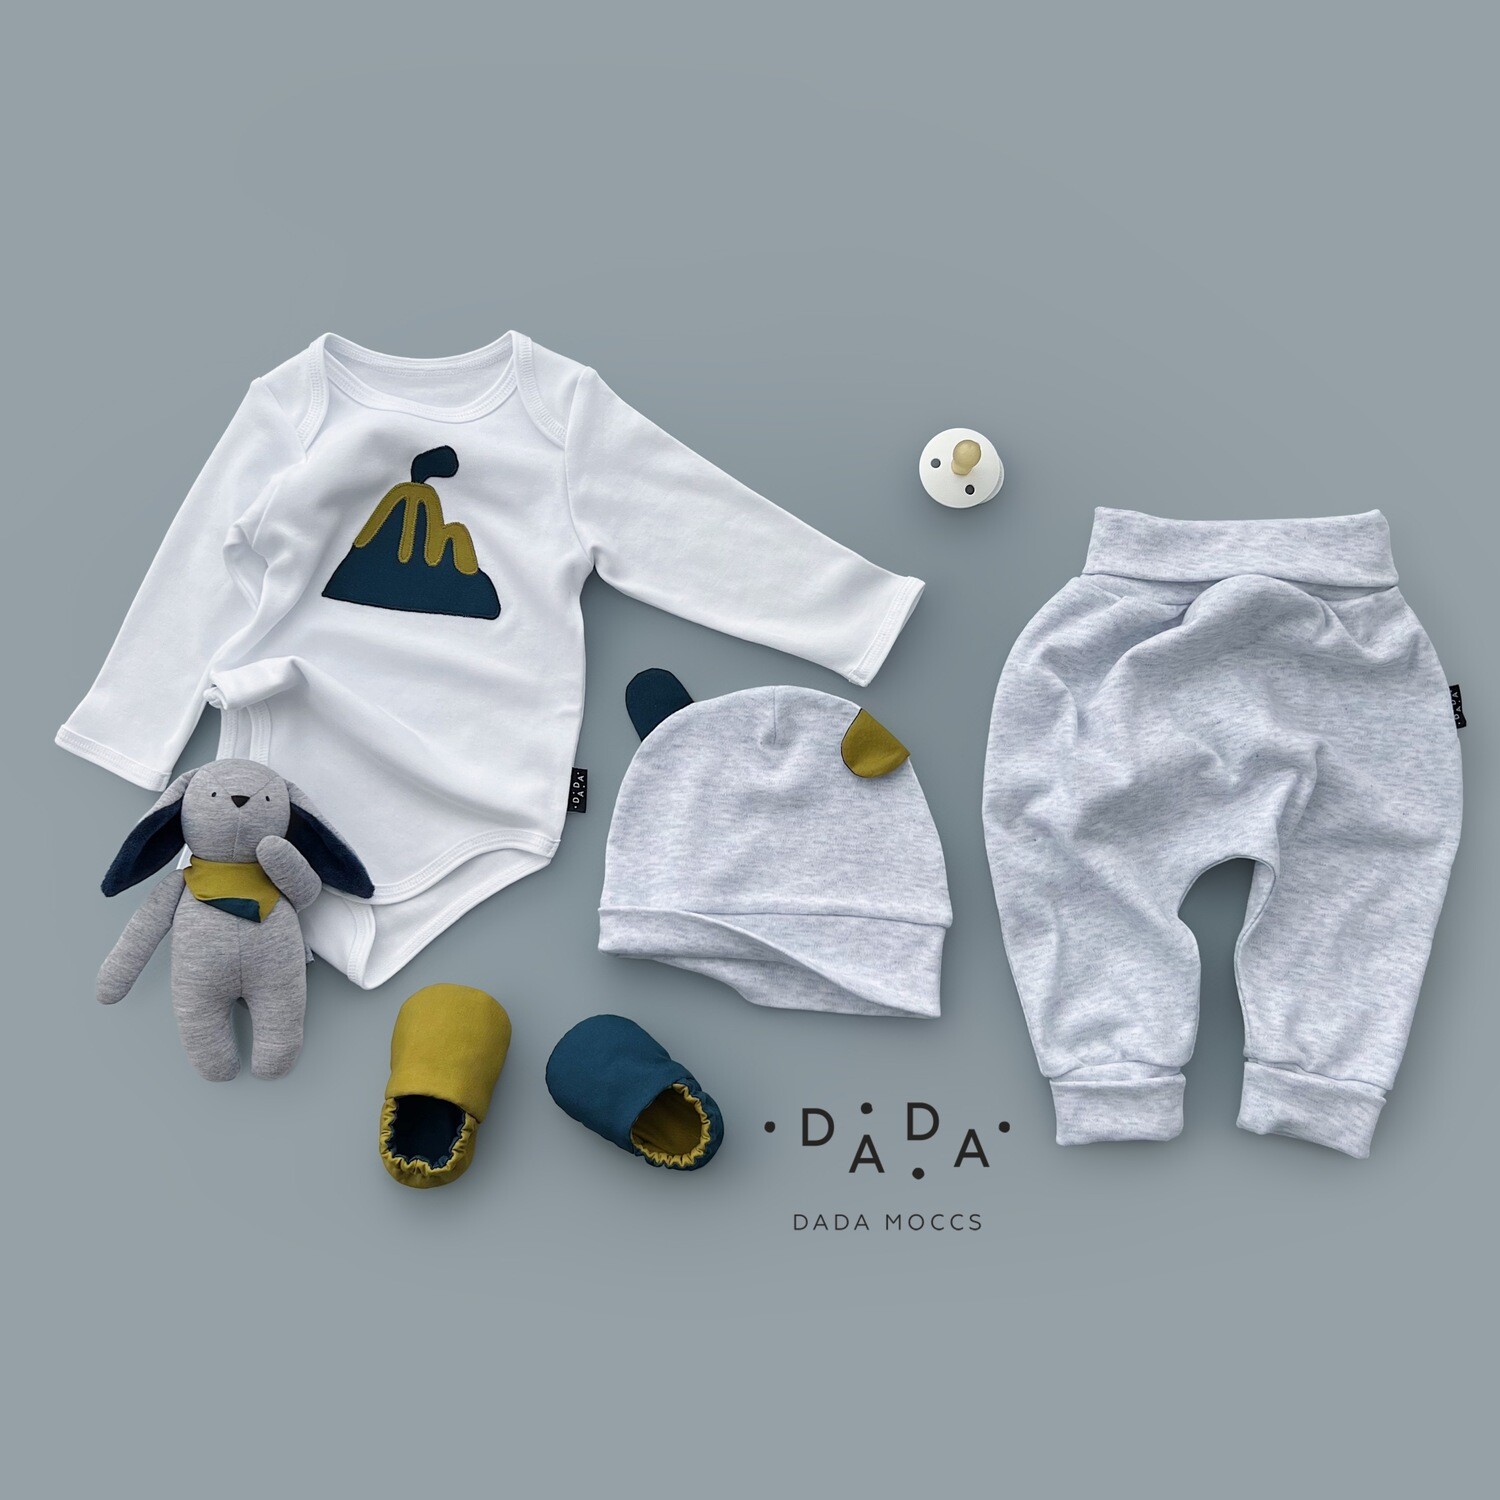 Комплект – боди с аппликацией, легкие трикотажные брюки, моксы, шапочка и игрушка